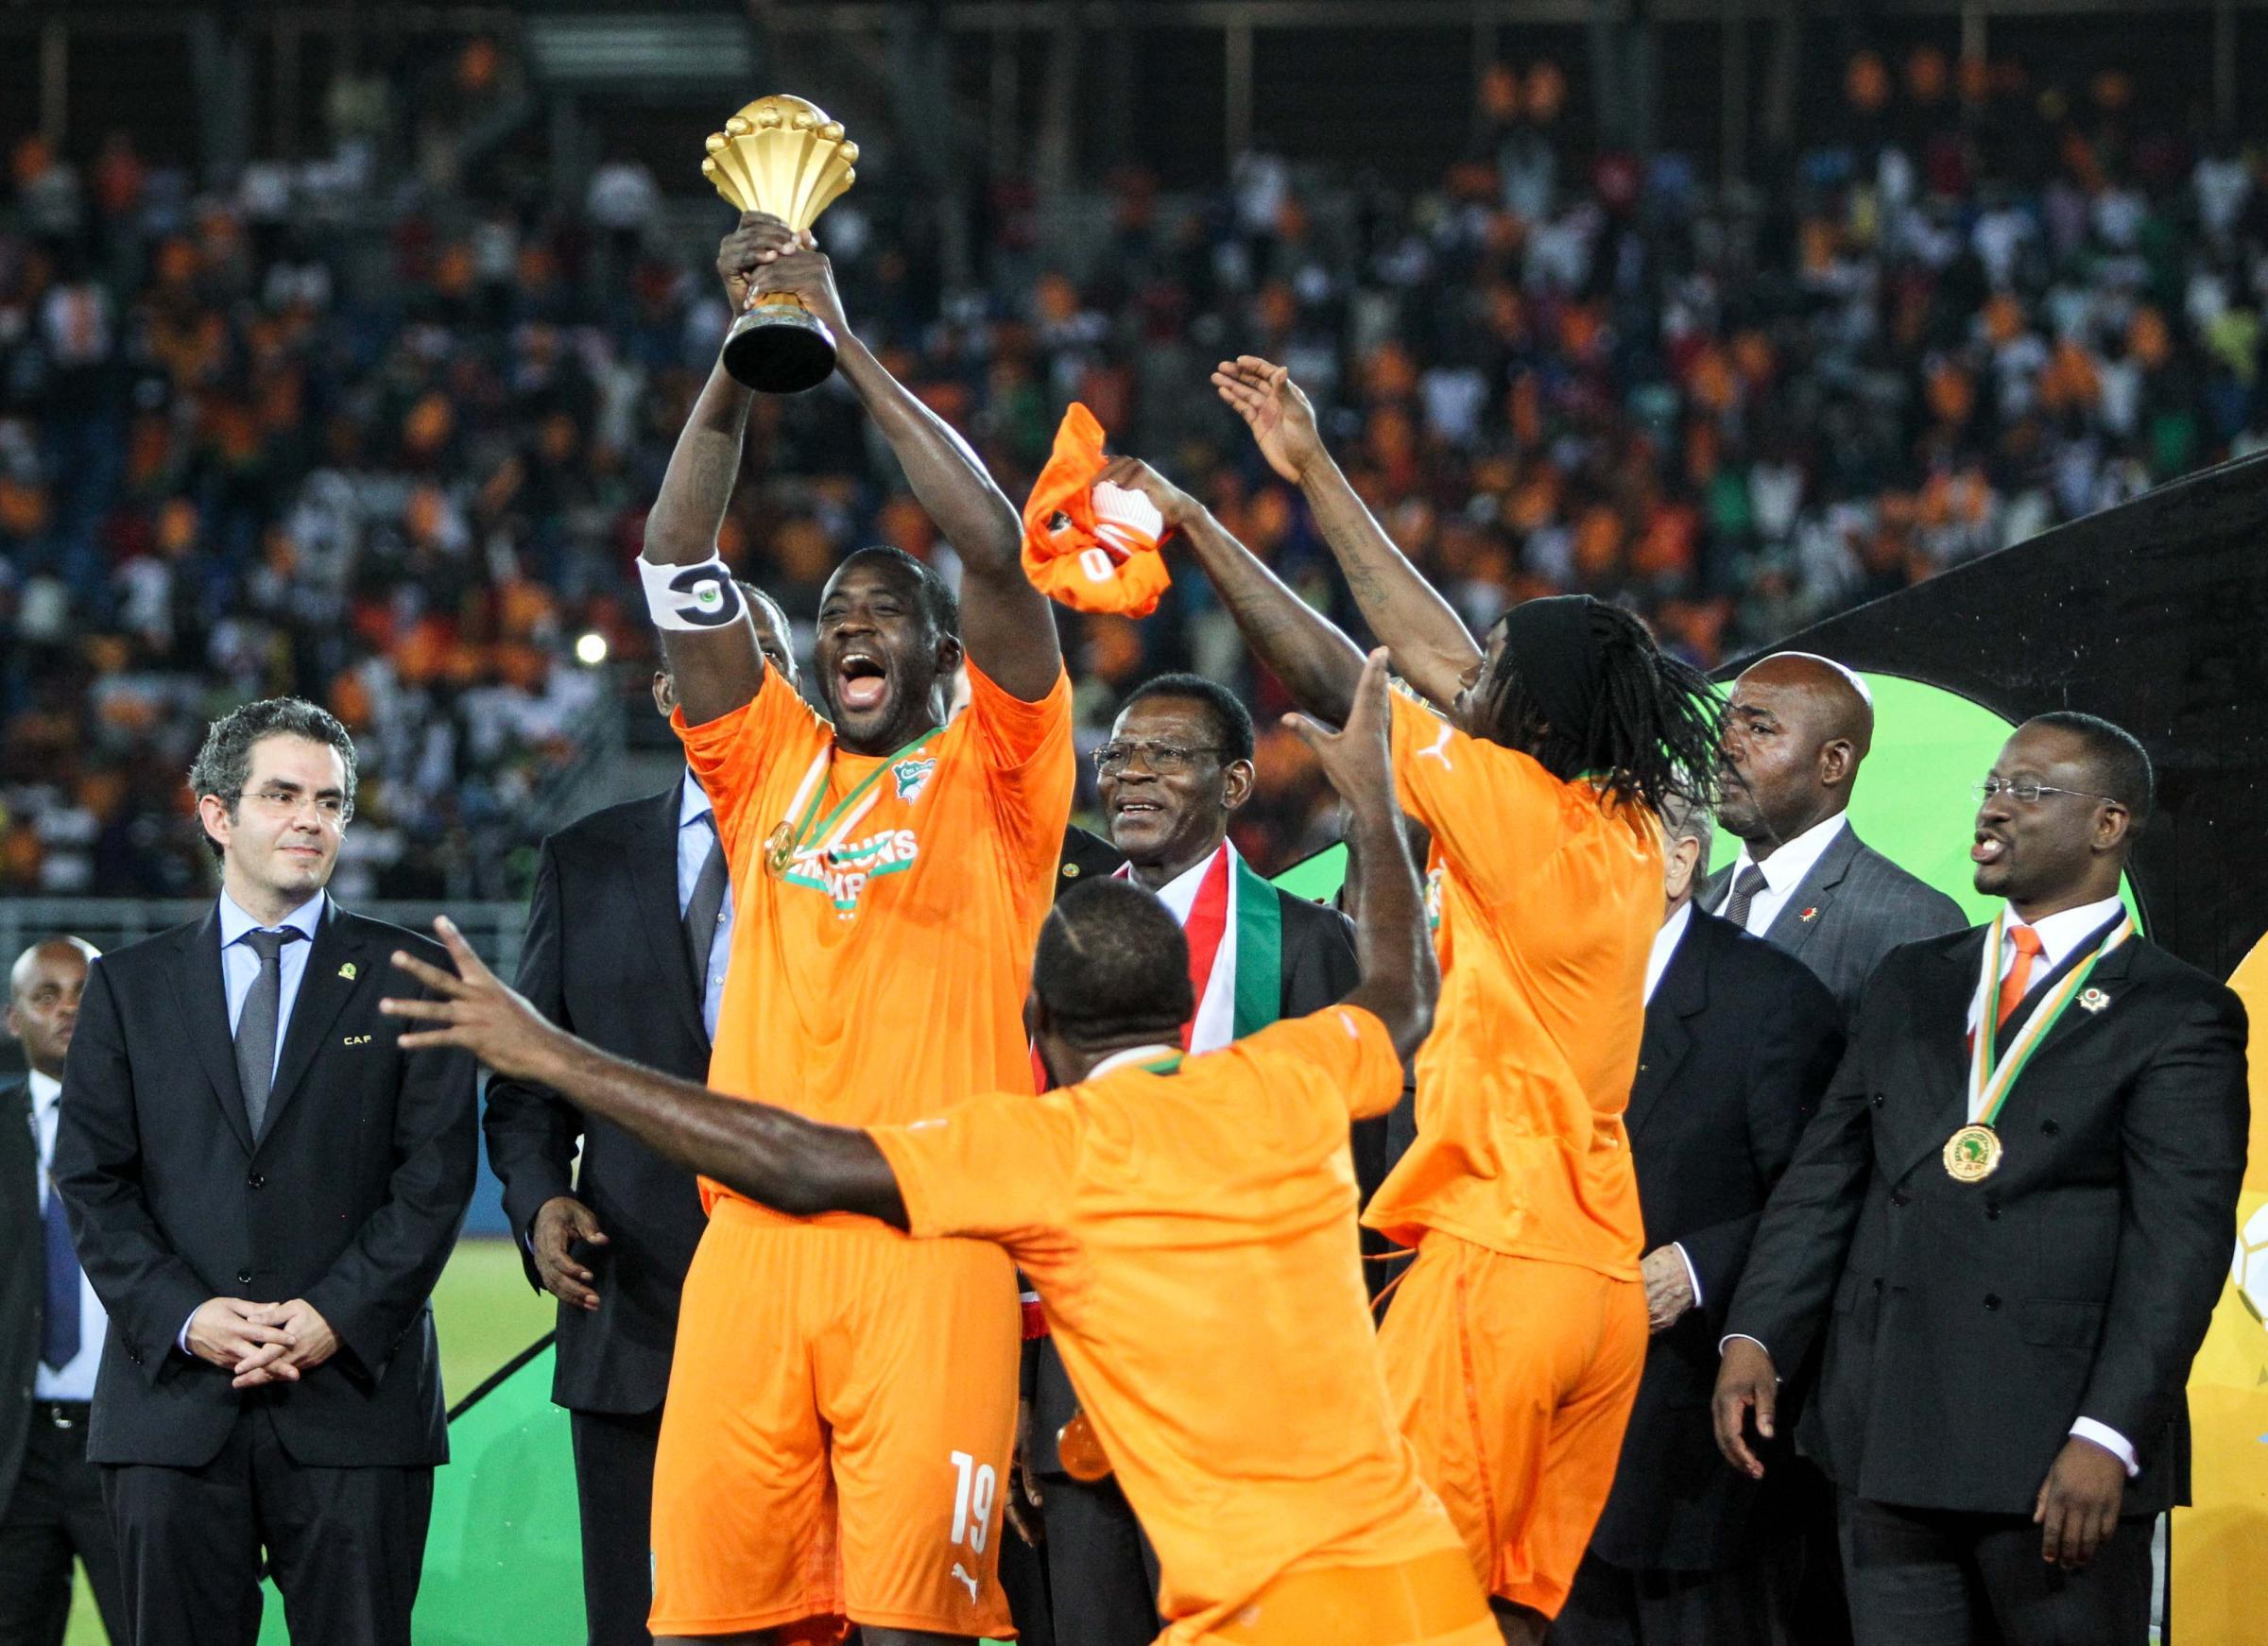 La Costa d'Avorio vince la Coppa d'Africa Photogallery Rai News